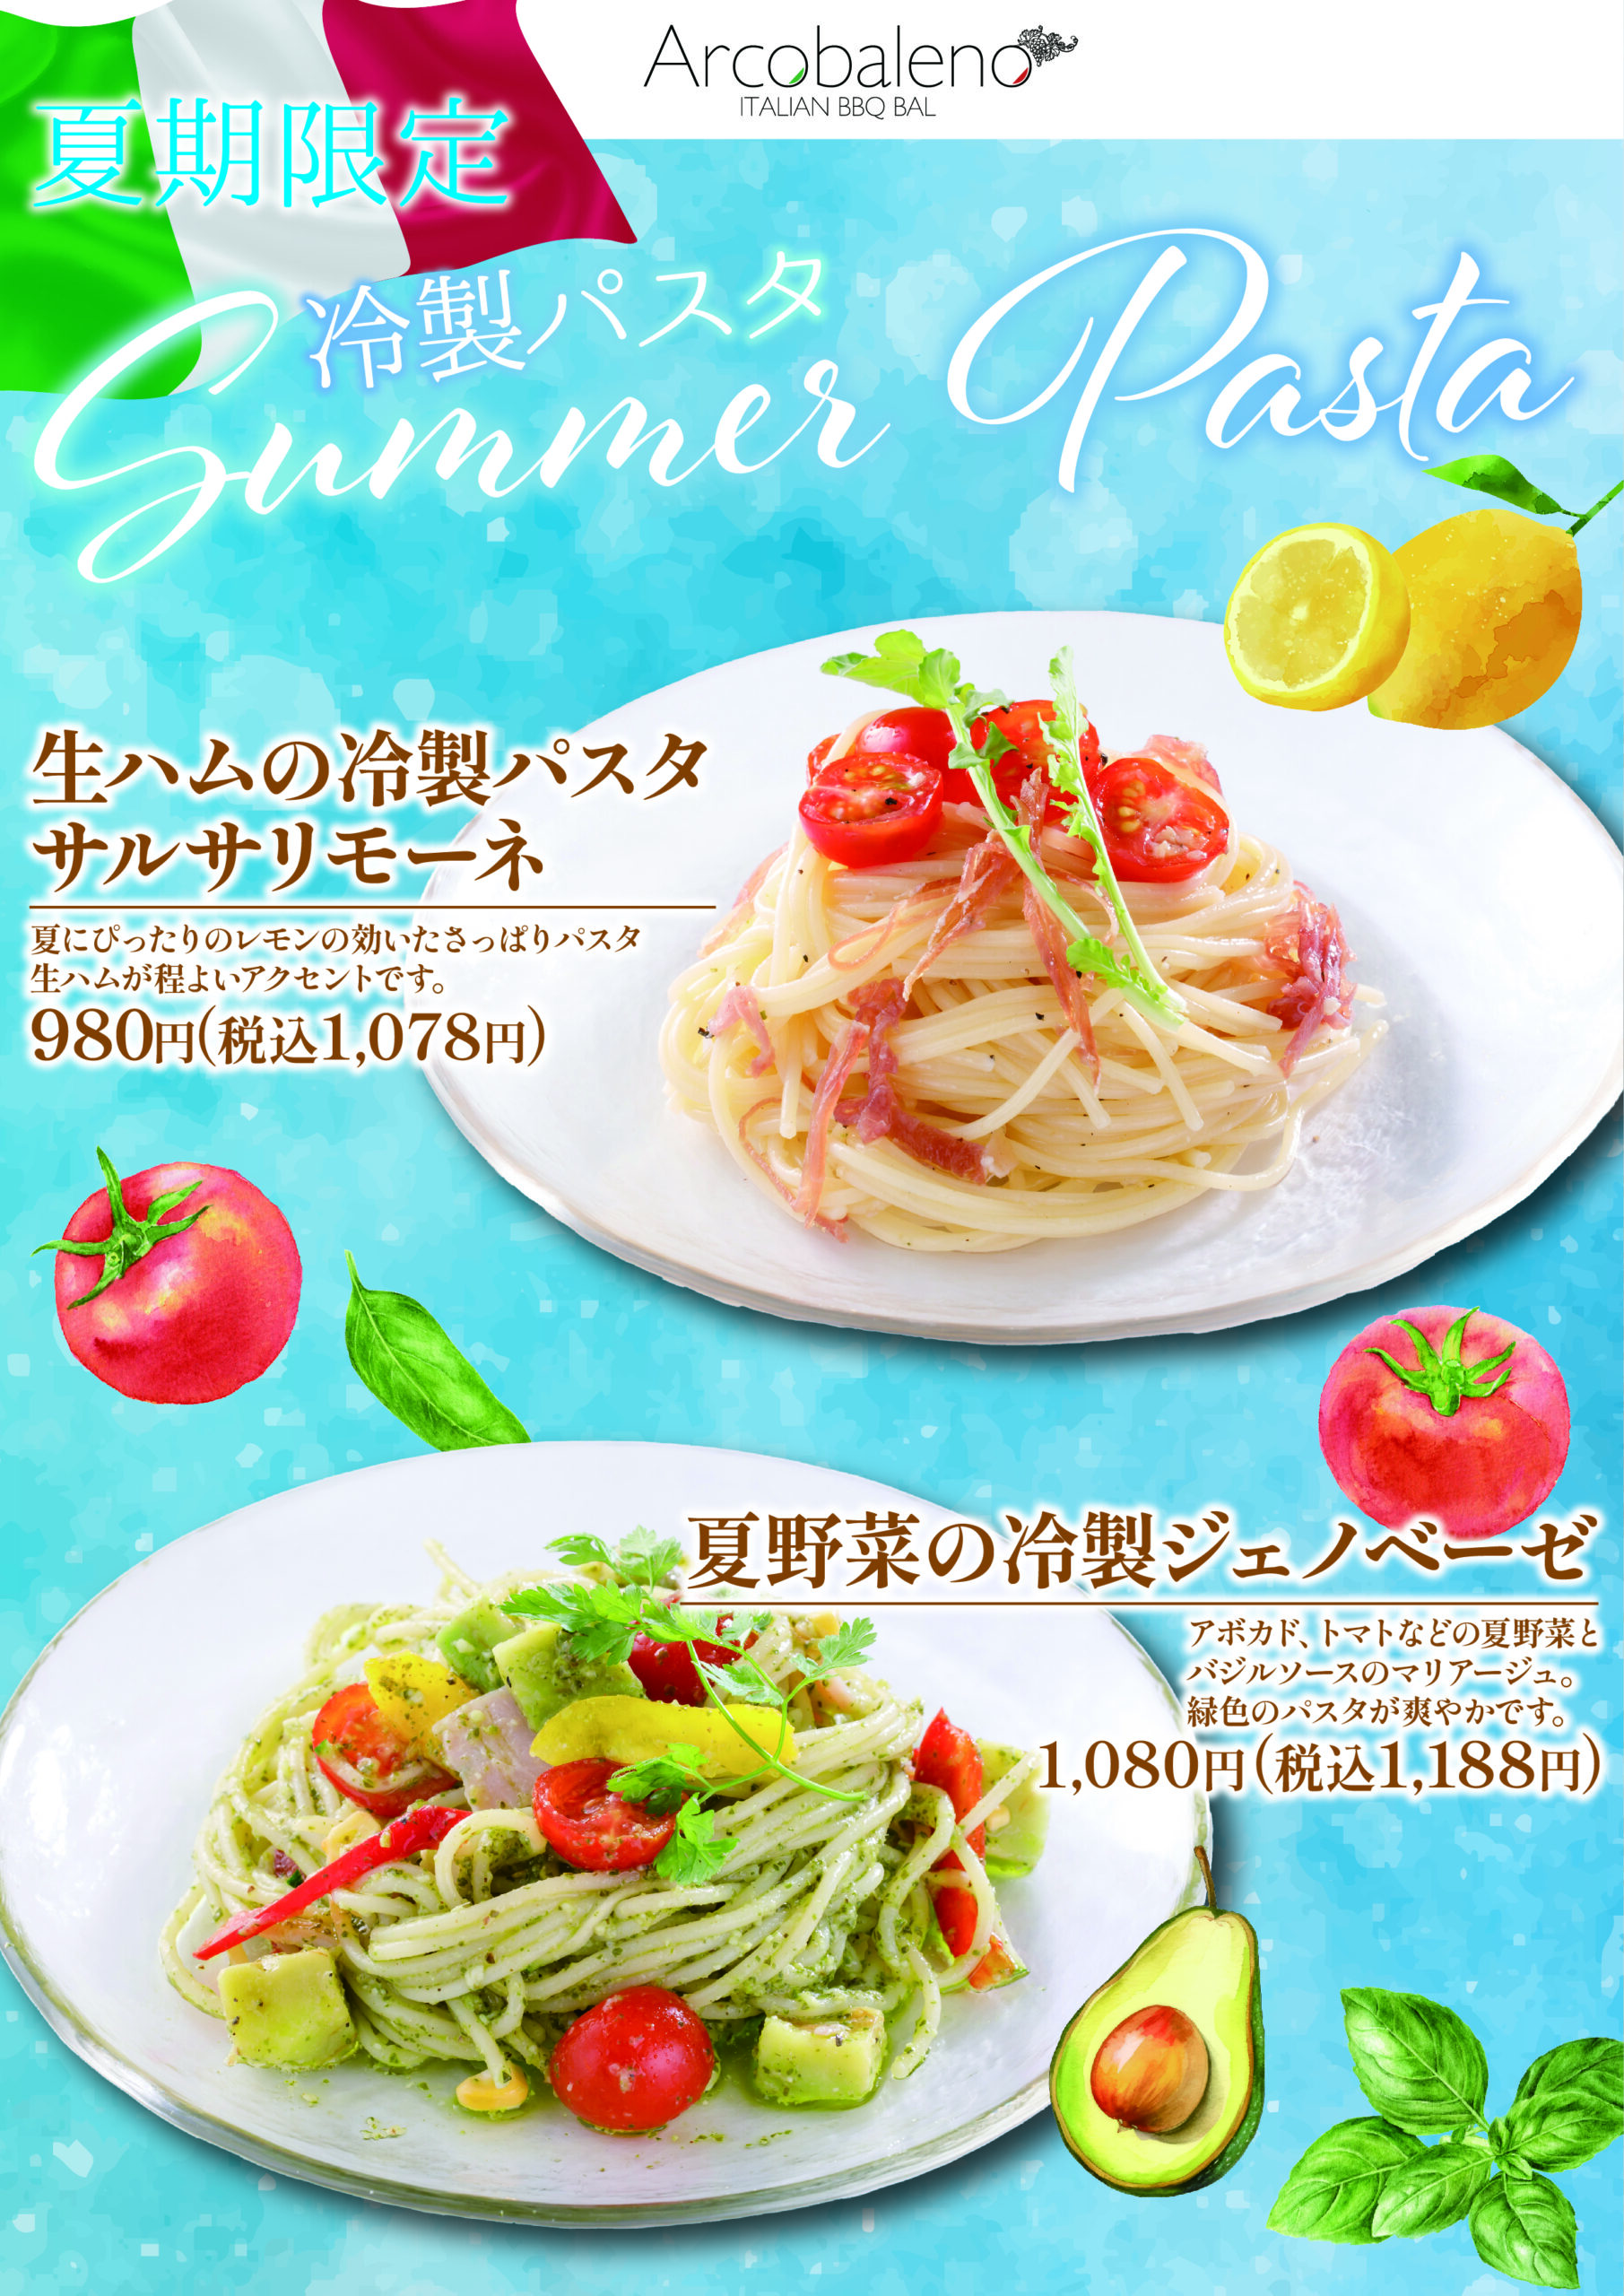 ”夏期限定”冷製パスタ‼ 『生ハムの冷製パスタ サルサリモーネ』夏にぴったりのレモンの効いたさっぱりパスタ。 生ハムが程よいアクセントです。 価格:1,078円(税込) 『夏野菜の冷製ジェノベーゼ』アボカド、トマトなどの夏野菜とバジルソースのマリアージュ。 緑色のパスタが爽やかです。 価格:1,188円(税込)